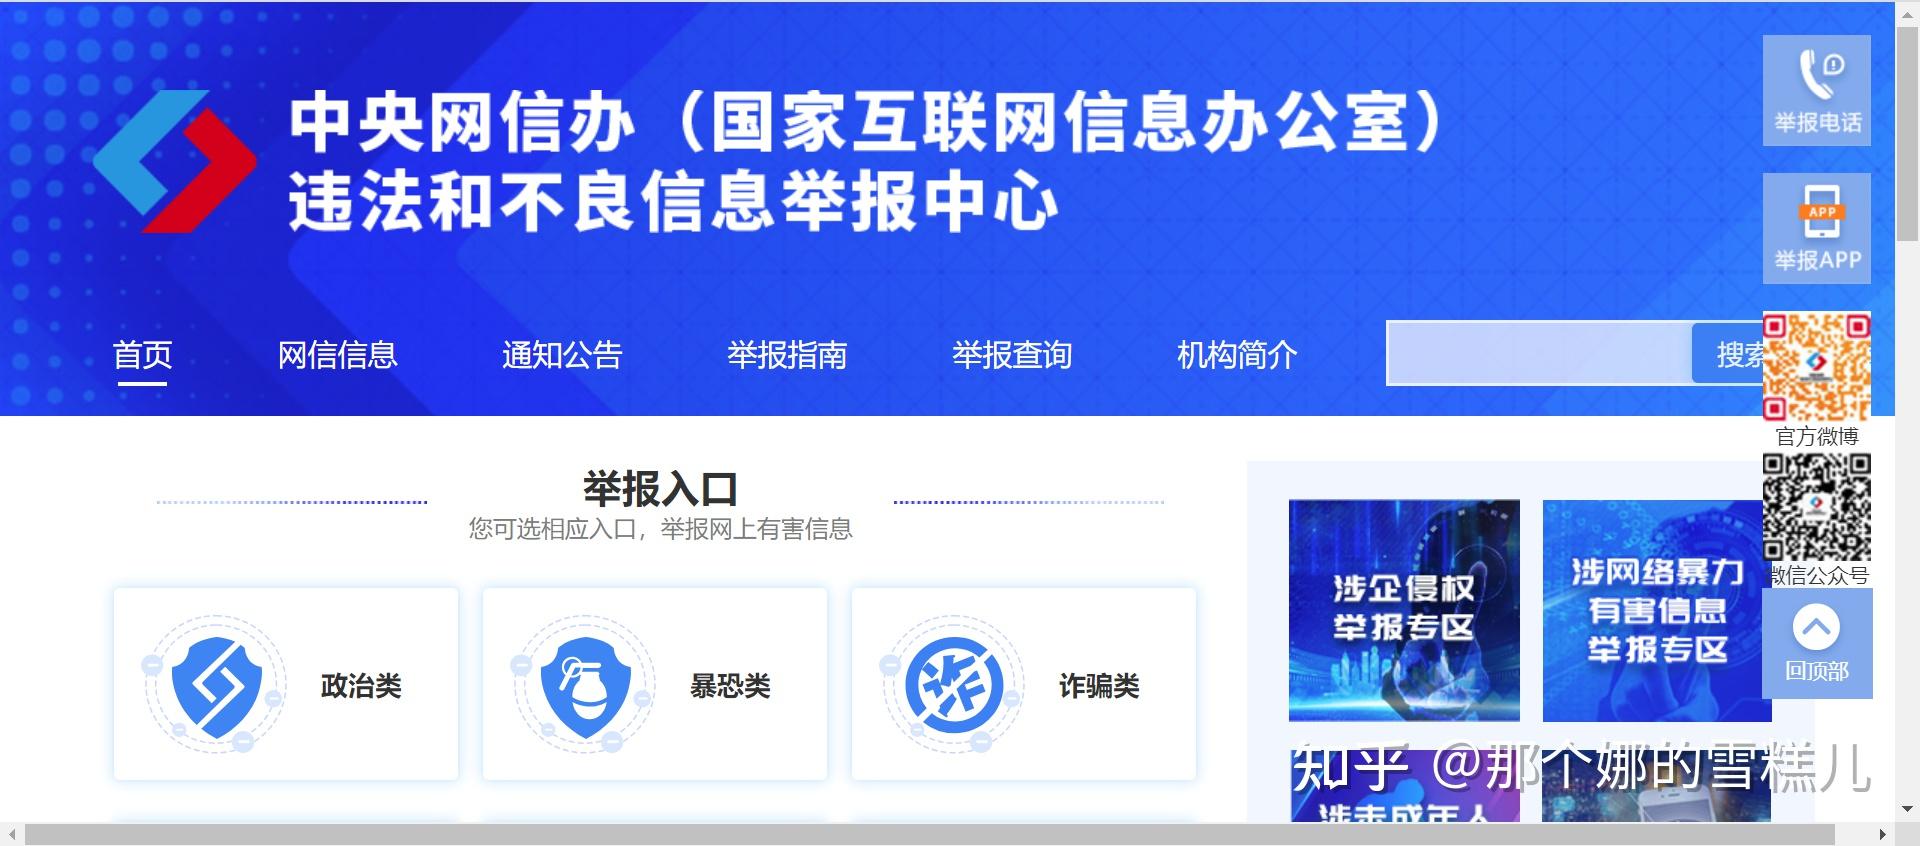 陕西省劳动保障监察网上投诉举报联动平台